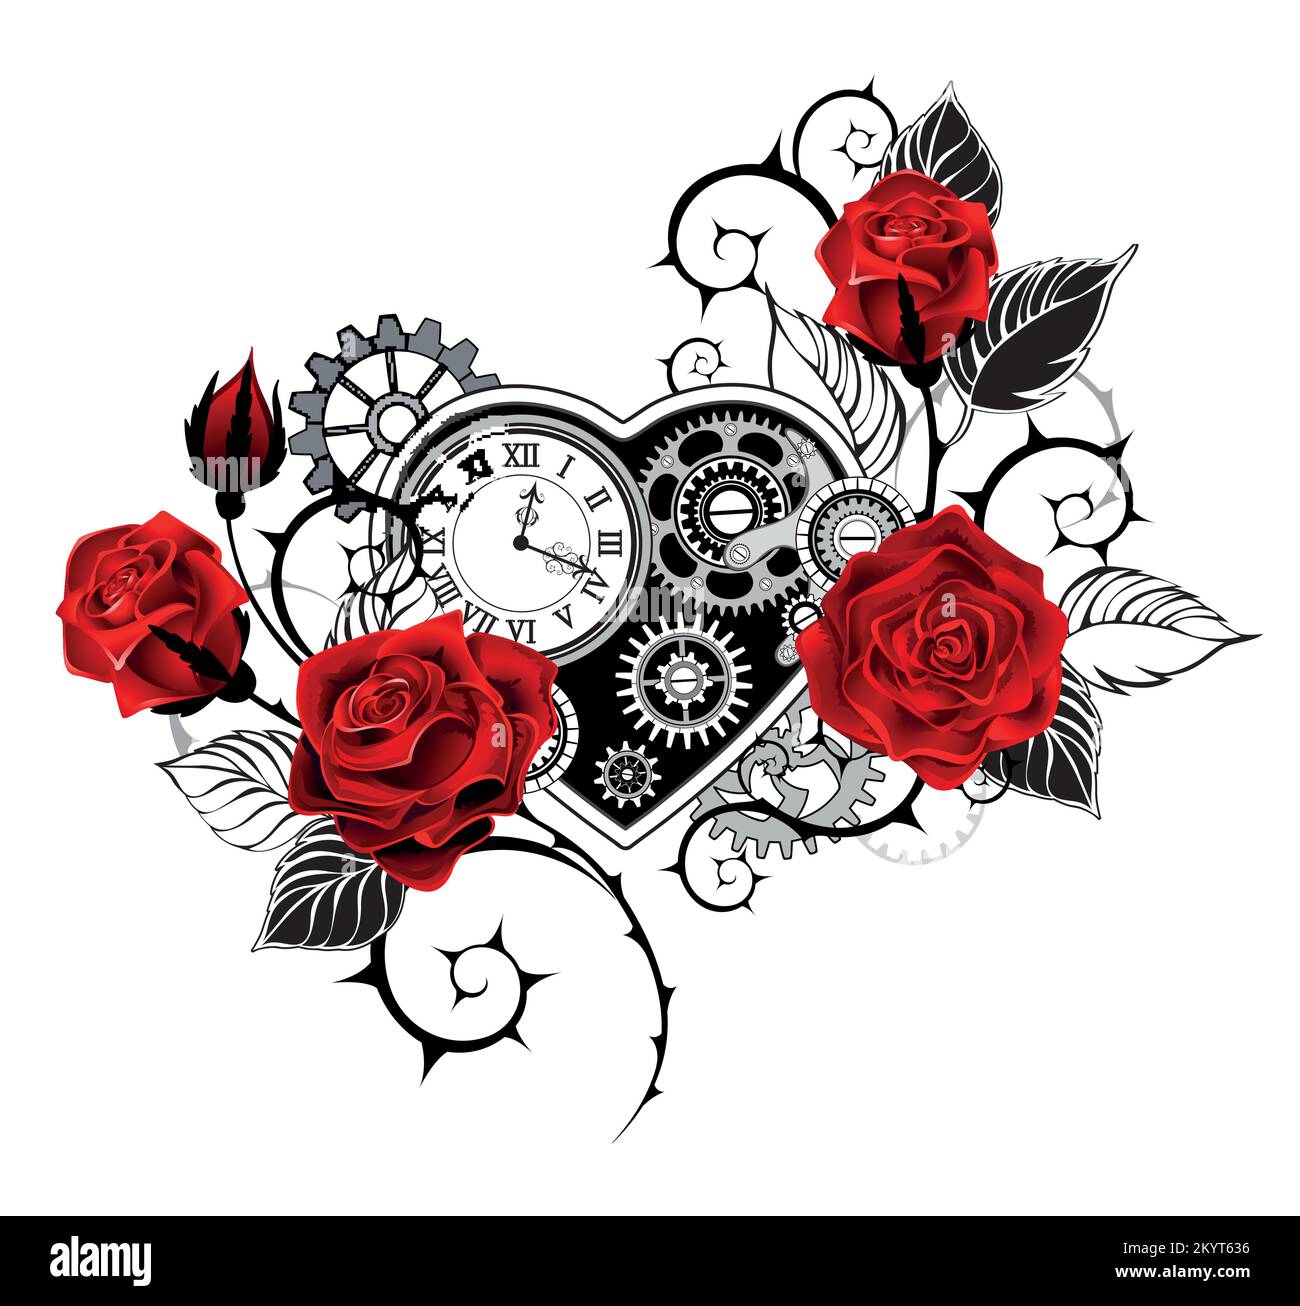 Künstlerisch gezeichnet, mechanisches Herz mit antiker Uhr, dekoriert mit roten Rosen mit schwarzen, spitzen Stielen auf weißem Hintergrund. Steampunk-Style. Stock Vektor